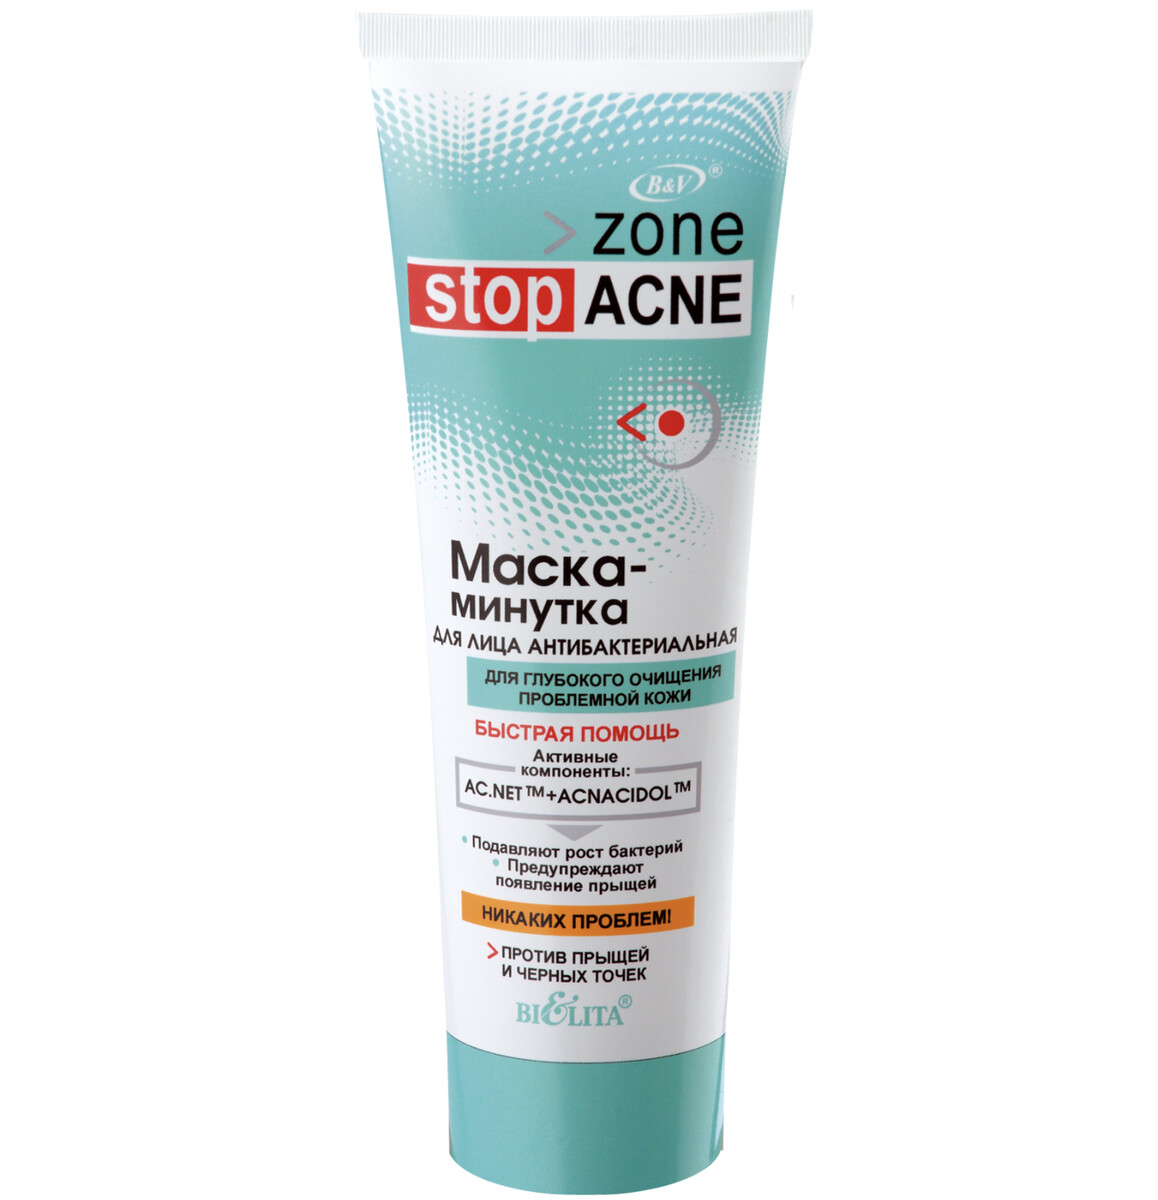 Stop acne маска-минутка для лица антибактериальная 75 мл маска для лица против старения с растительной плацентой 26 г